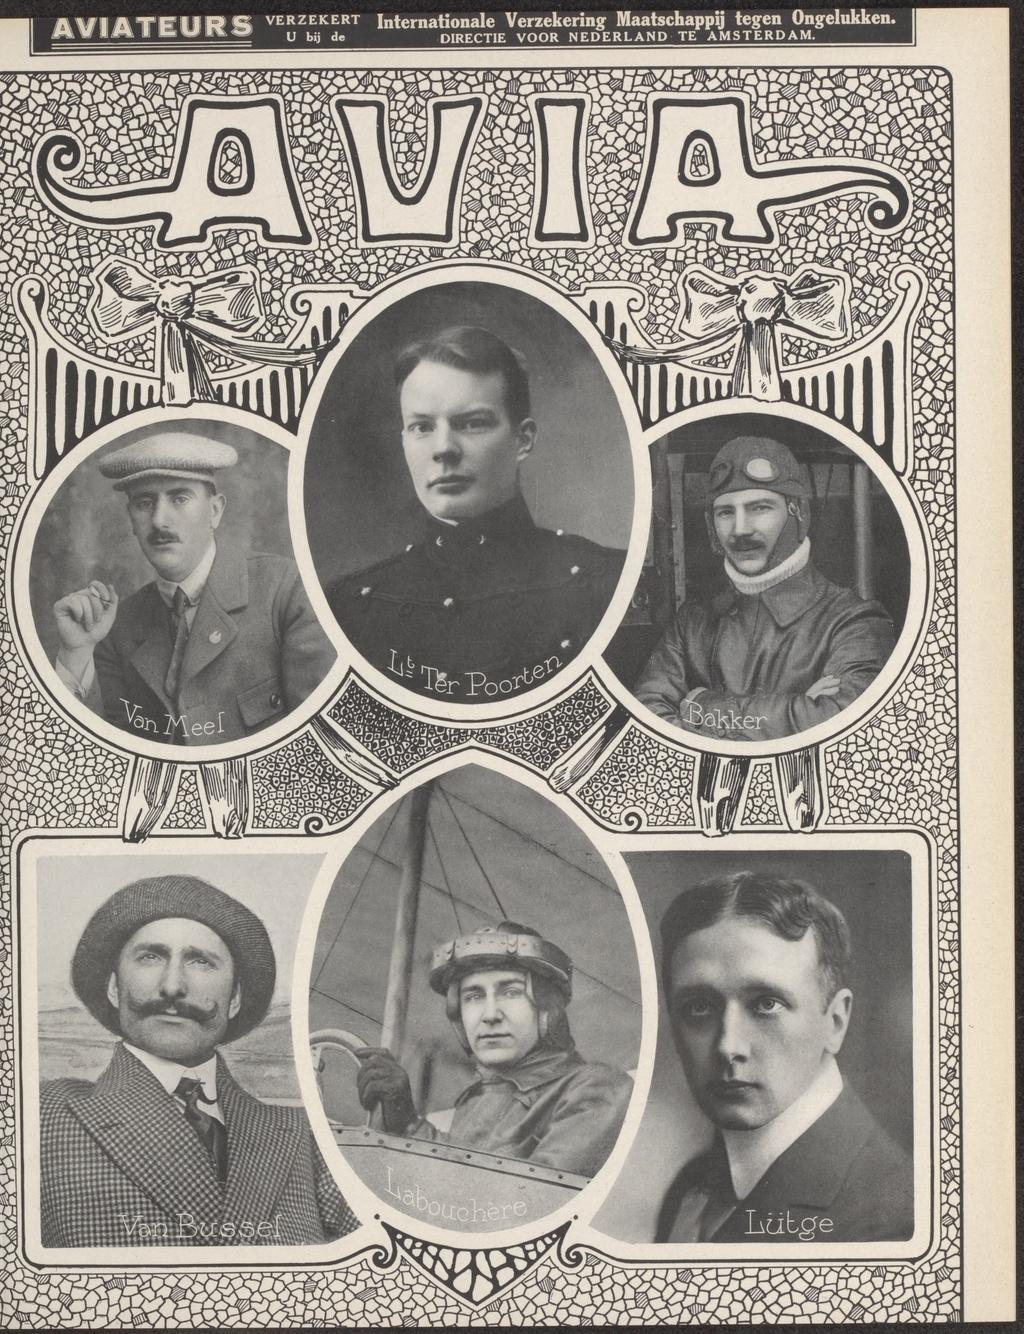 De zes piloten, die aan de legermanoeuvres deelnamen (bron: AVIA 1(1911) no. 11)